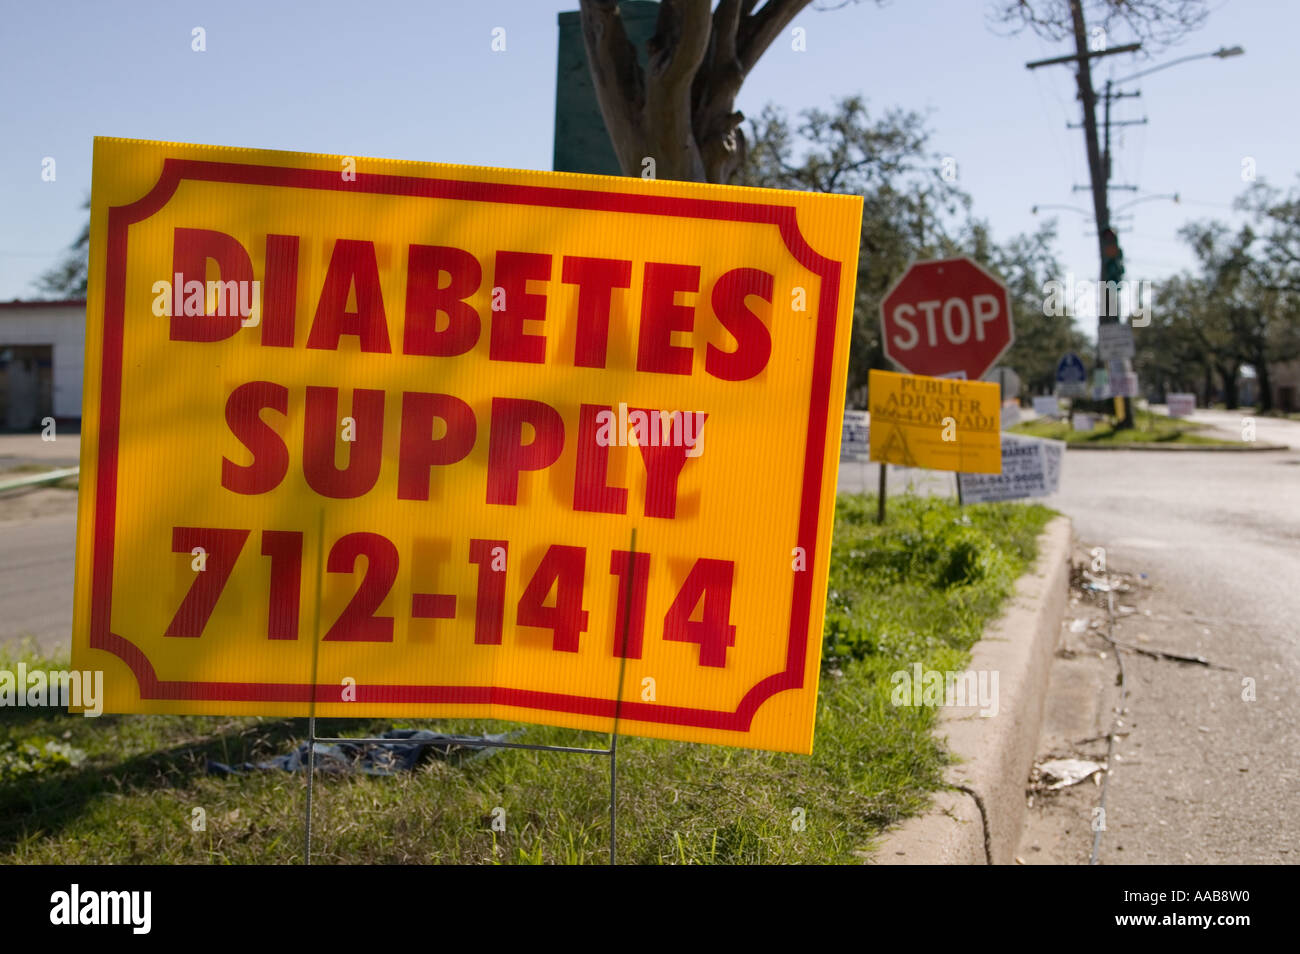 Lieferungen und Leistungen im Stadtteil Bywater New Orleans Louisana sechs Monate nach achtern Werbung Plakate fördern diabetes Stockfoto